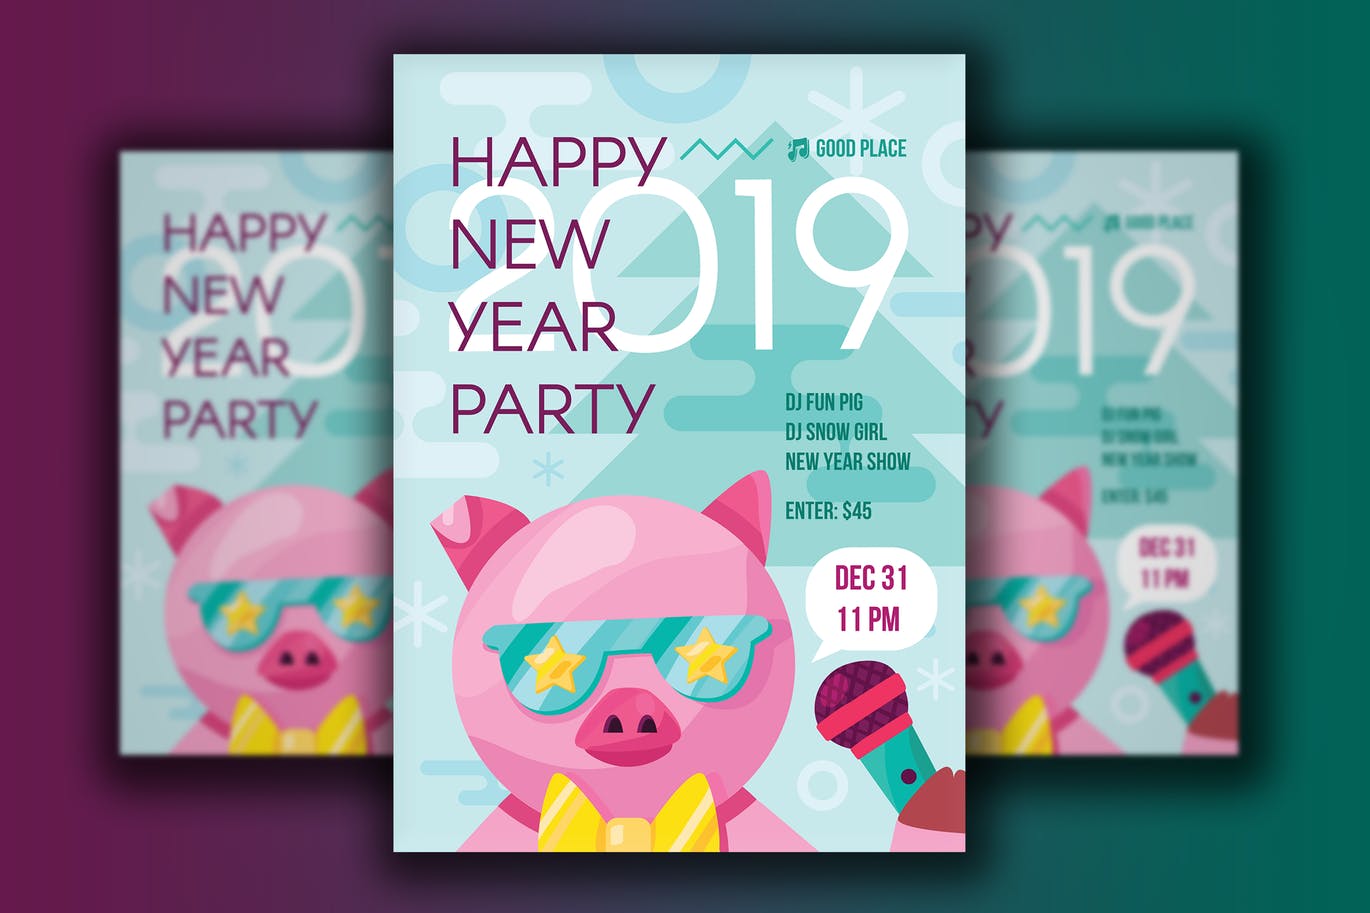 75 2019猪年元旦新年快乐海报宣传单 #301101